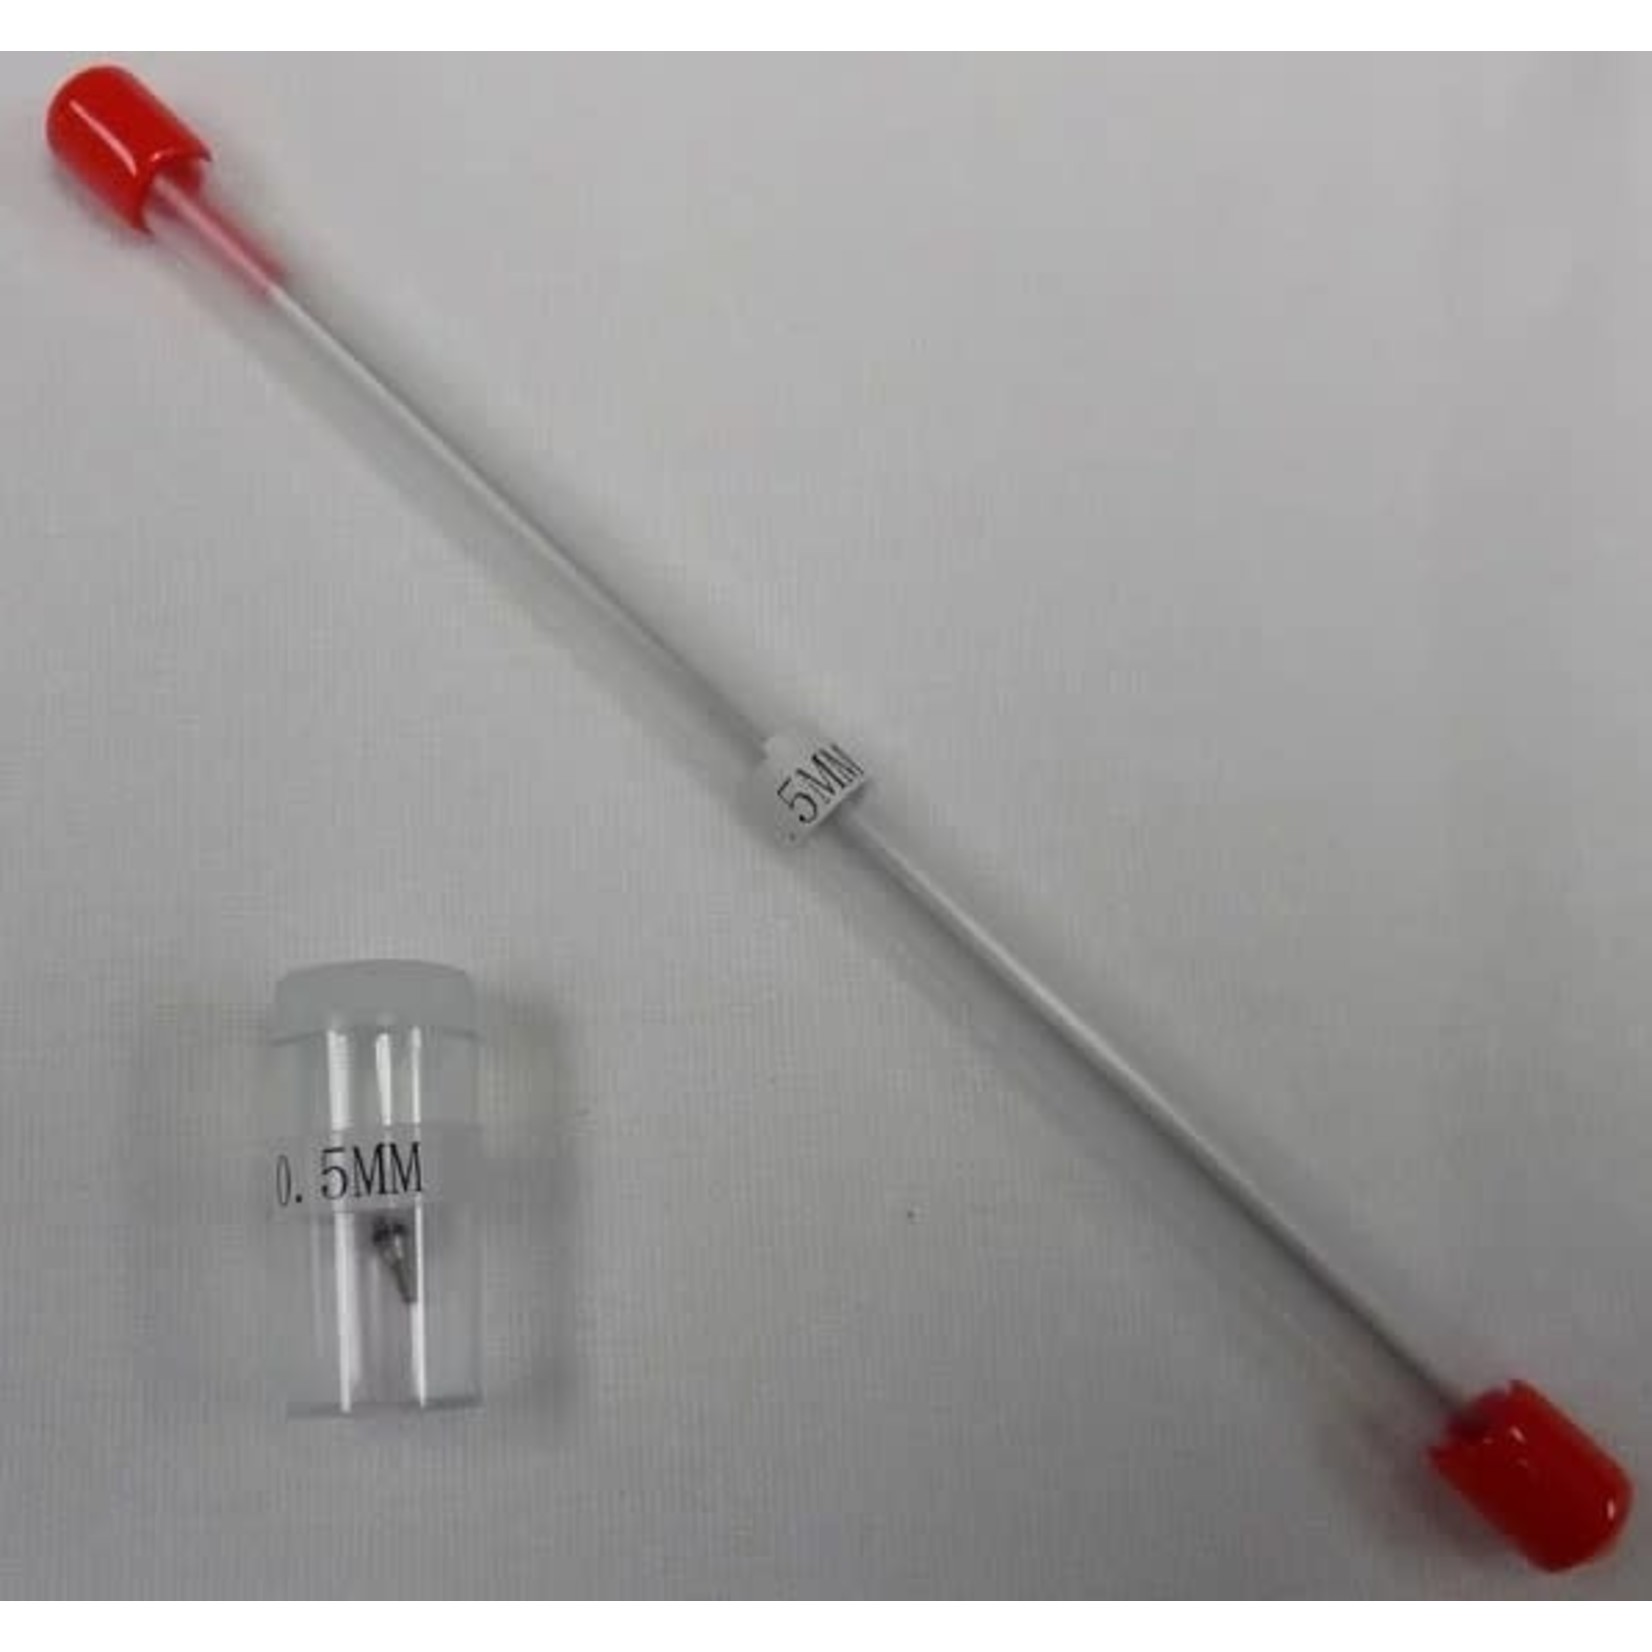 Vigiart Needle / Nozzle 0.2mm for HS30/80/200